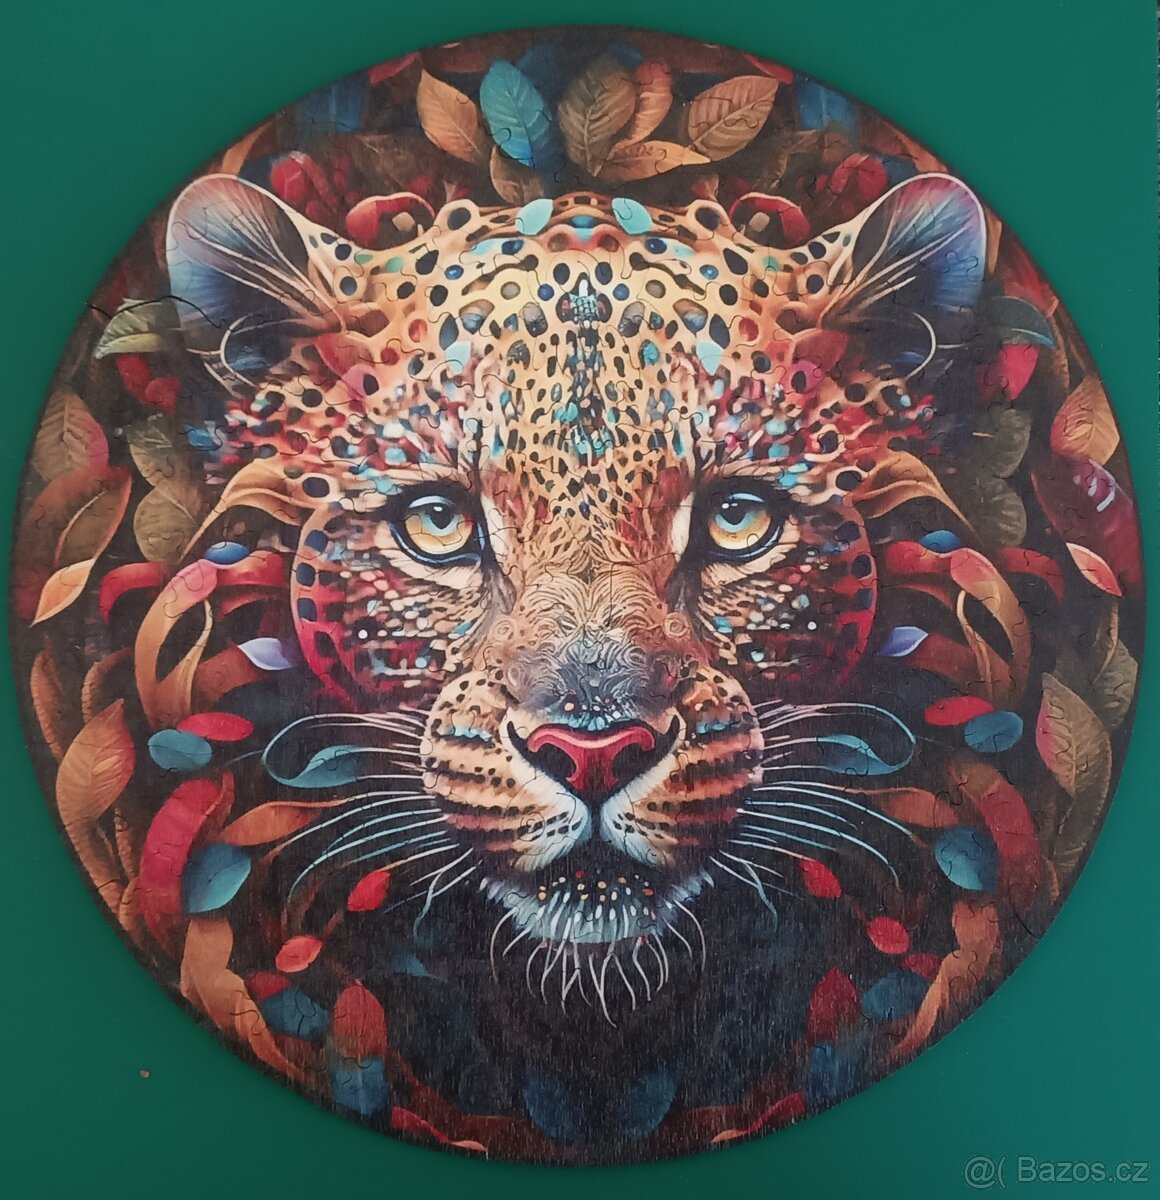 Dřevěné puzzle s motivem geparda